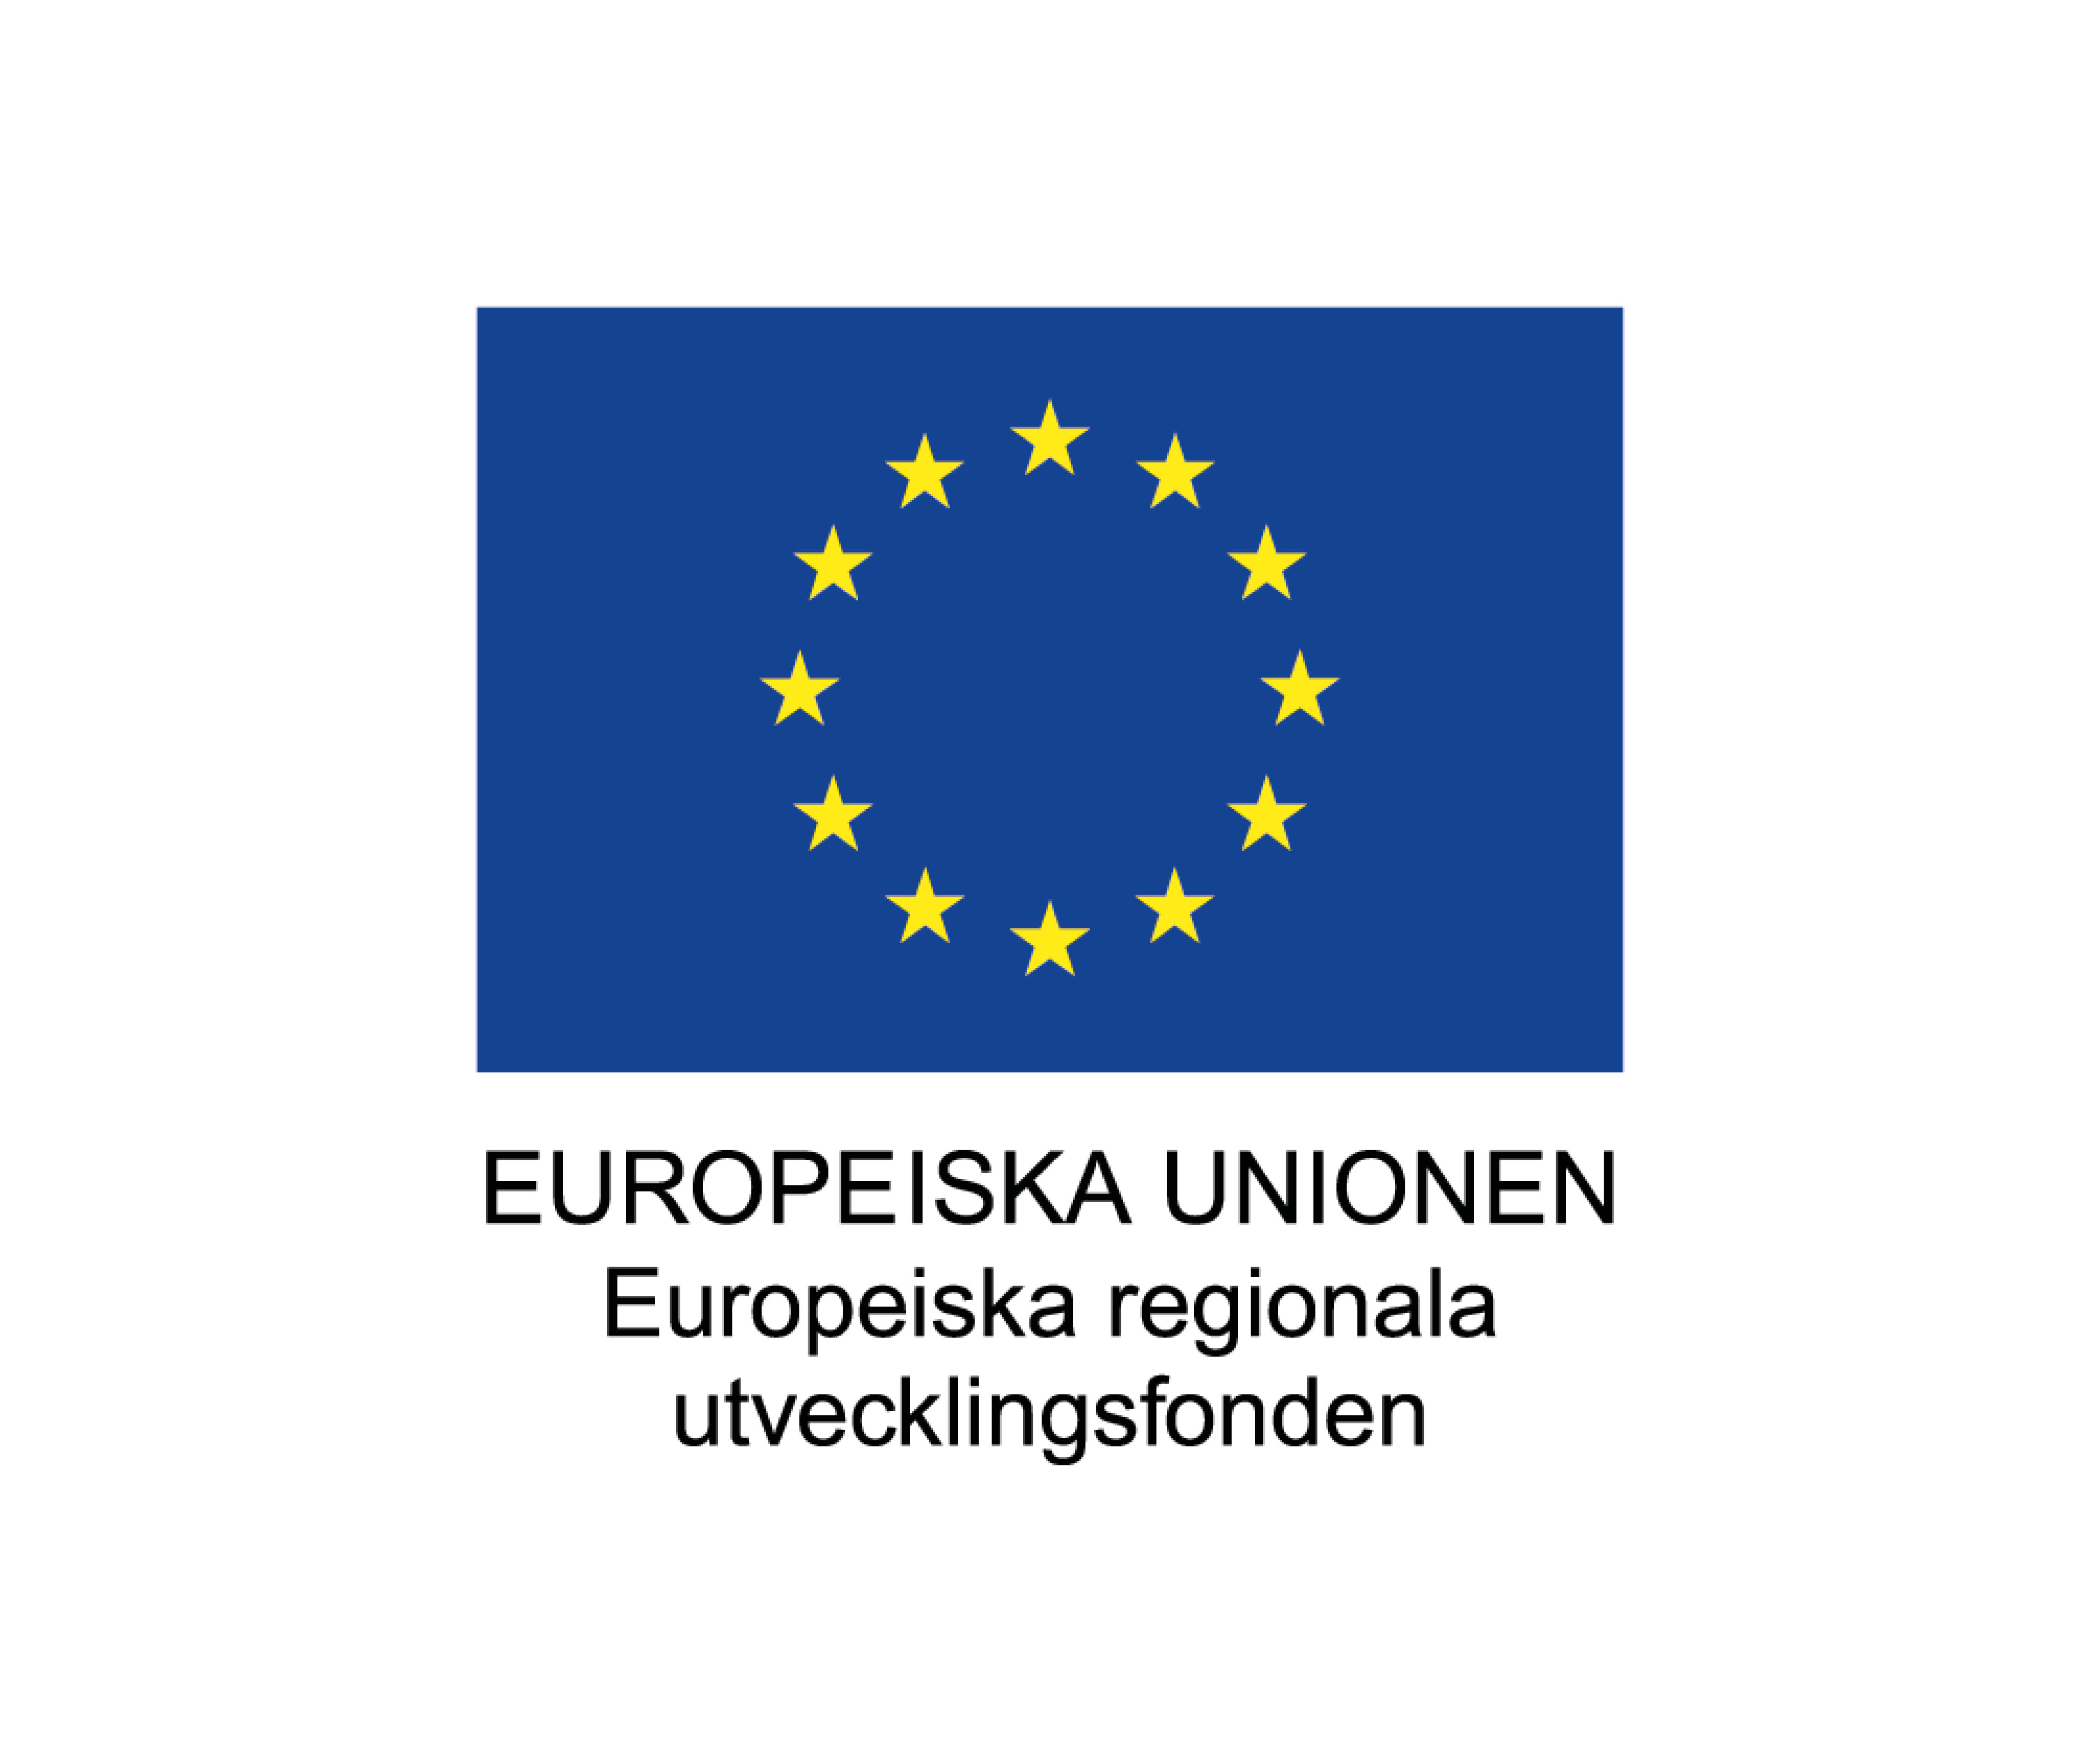 EU-flagga med text under där det står: Europeiska unionen Europeiska regionala utvecklingsfonden